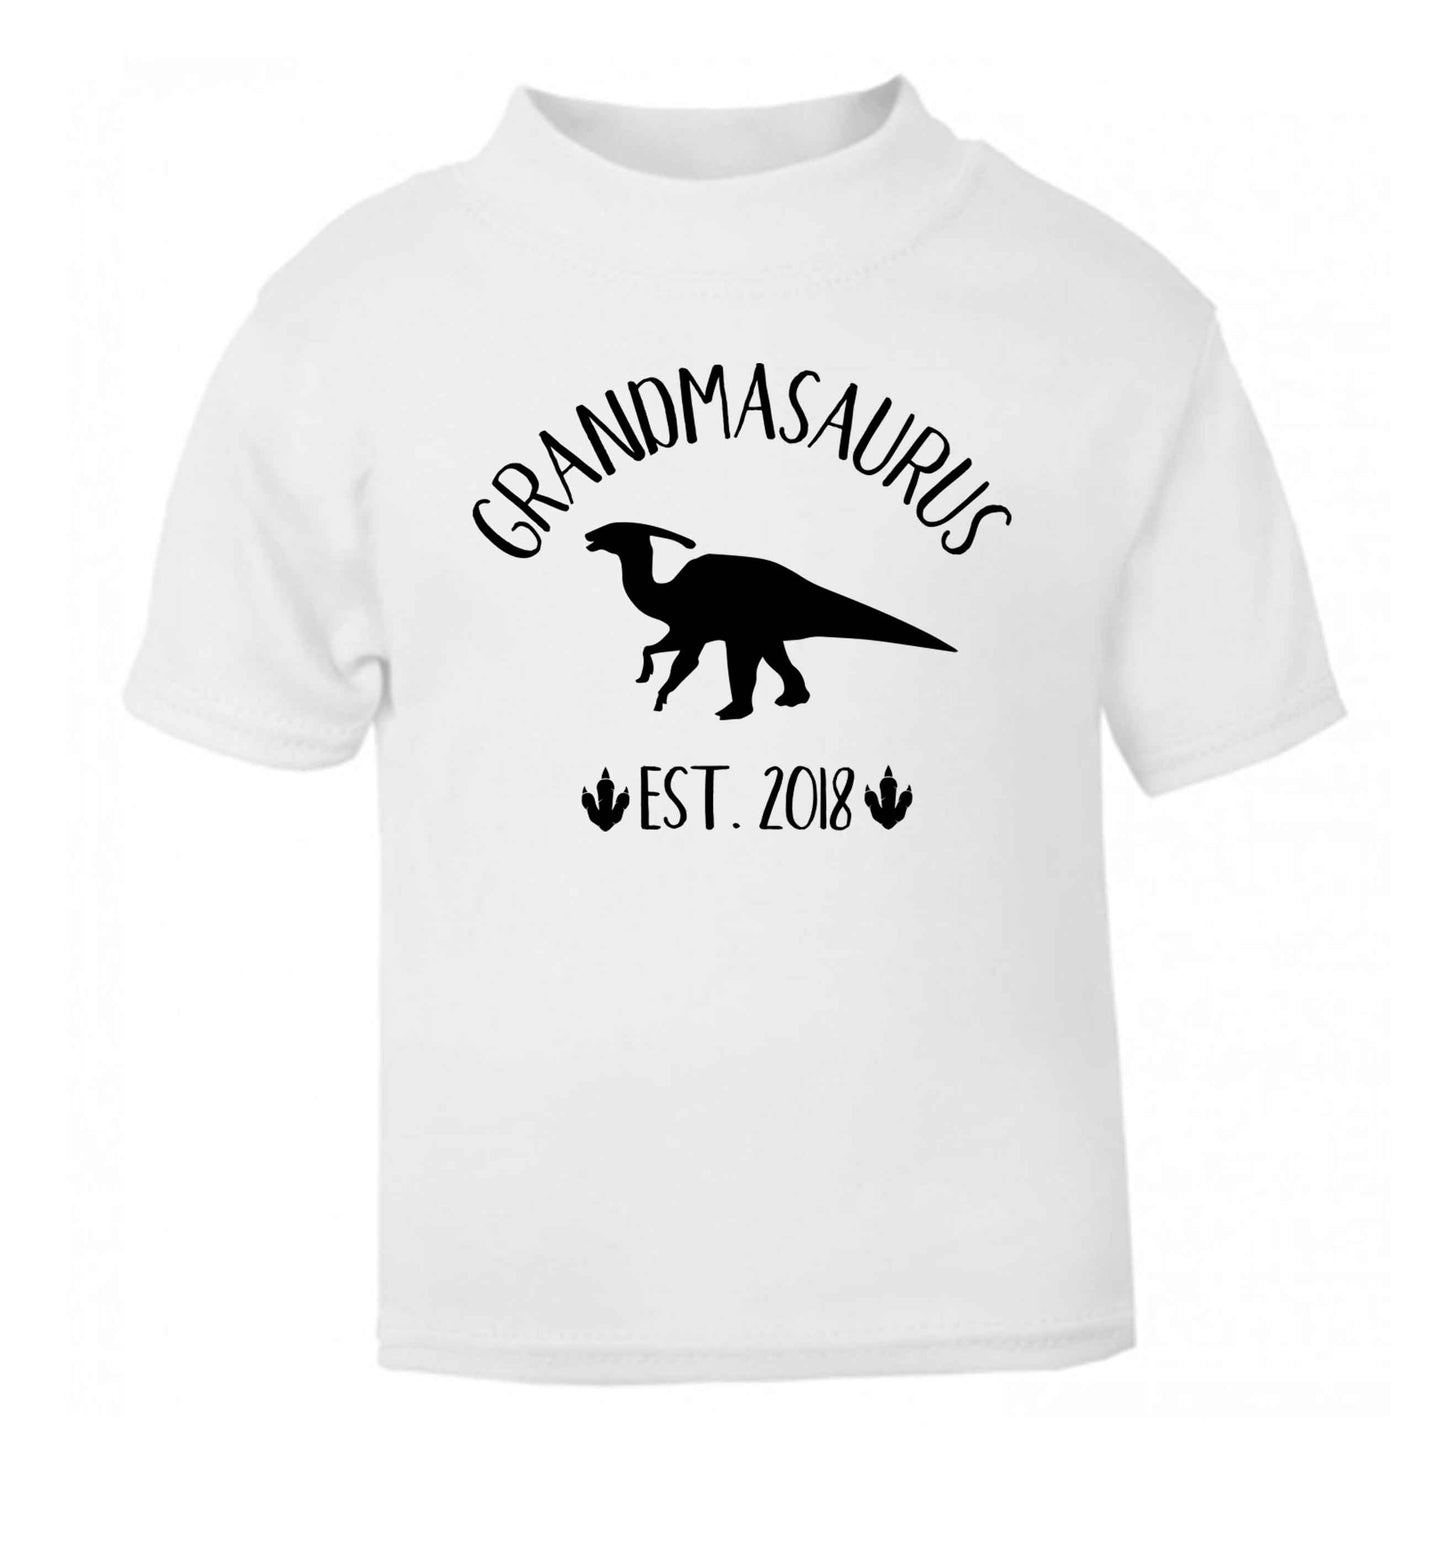 Personalised grandmasaurus since (custom date) white Baby Toddler Tshirt 2 Years